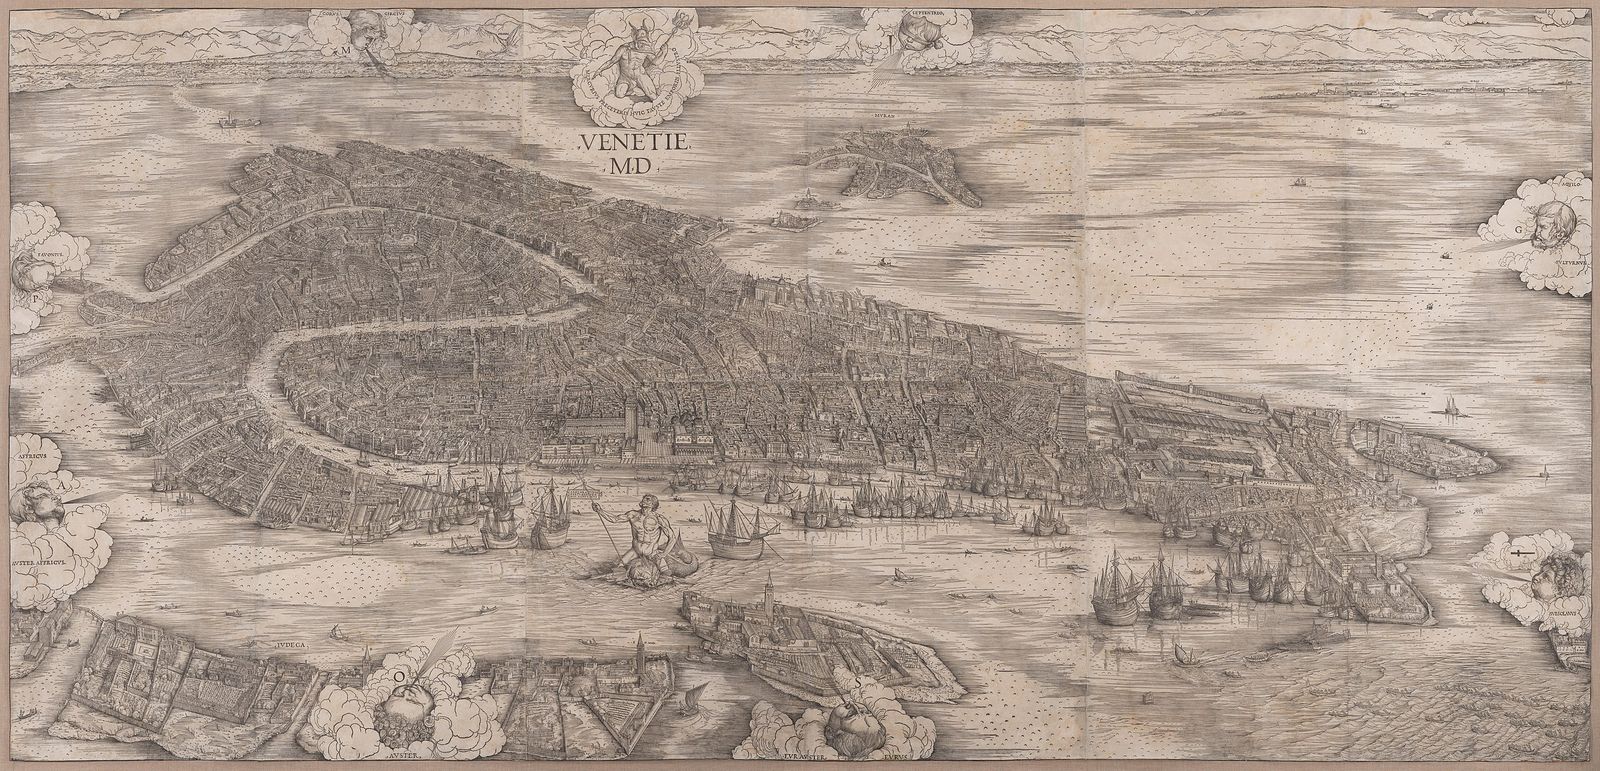 View of Venice, Jacopo de Barbari, 1500